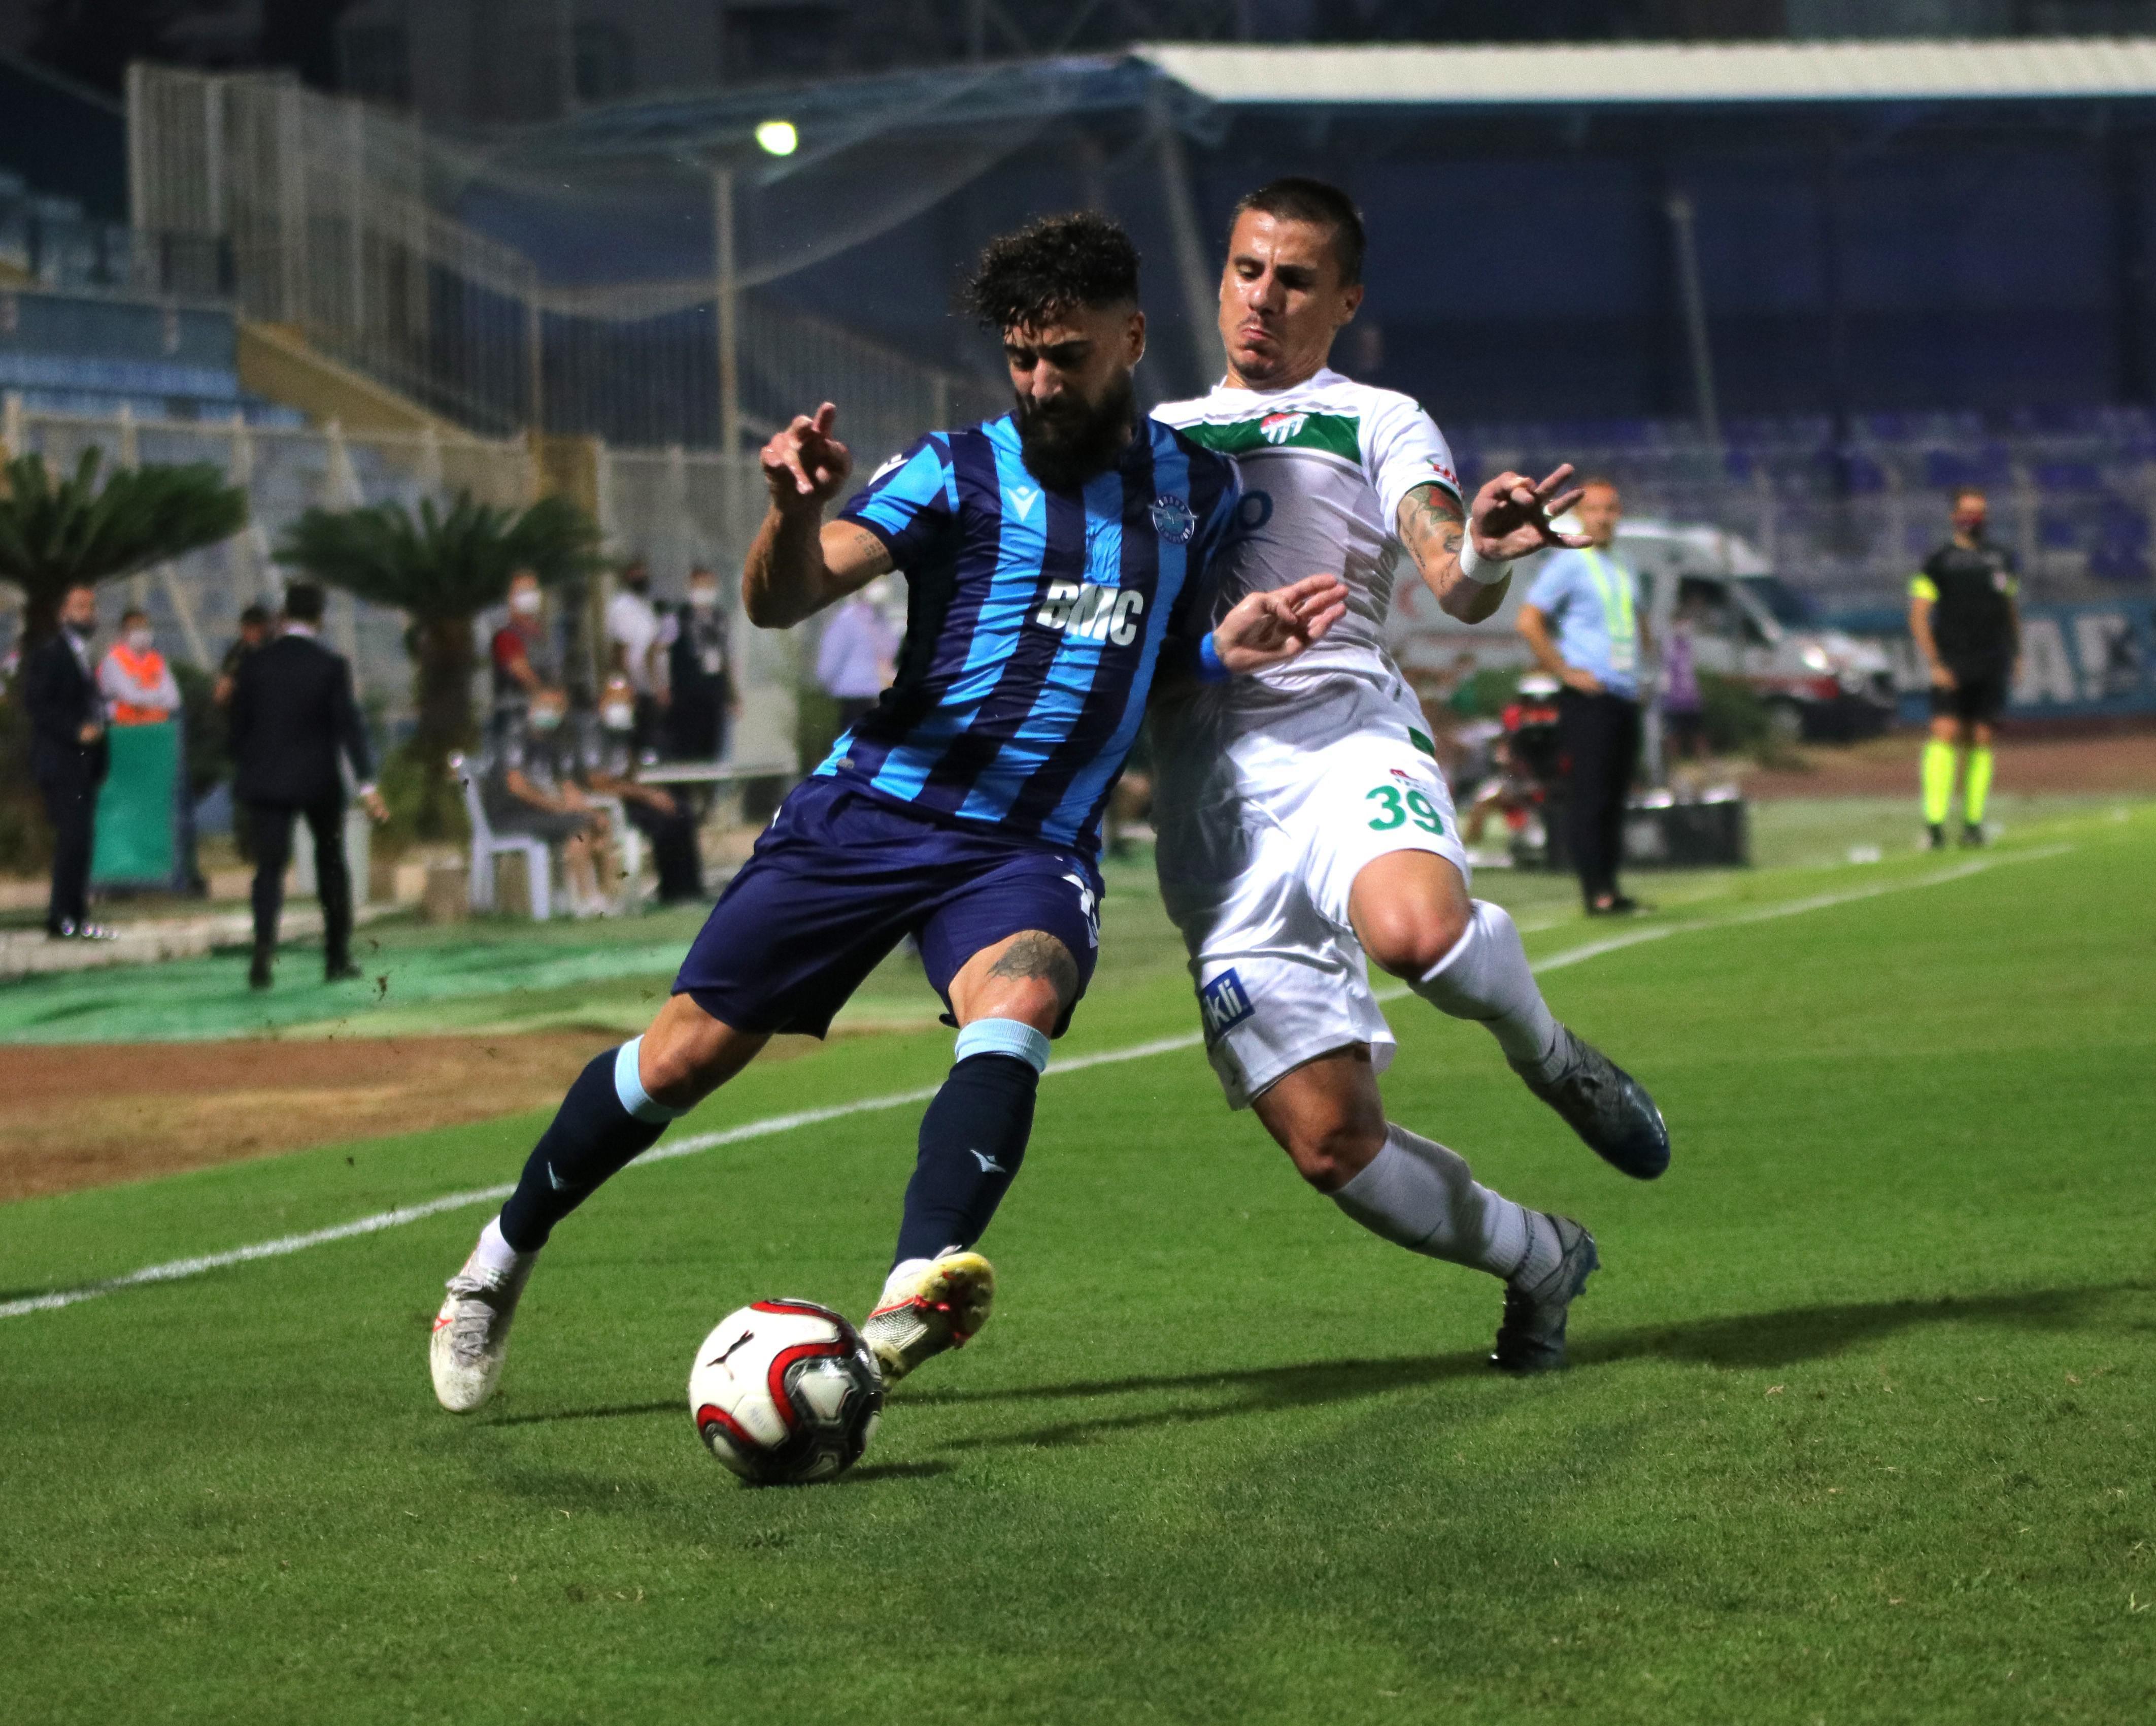 (ÖZET) Adana Demirspor - Bursaspor maç sonucu: 4-1